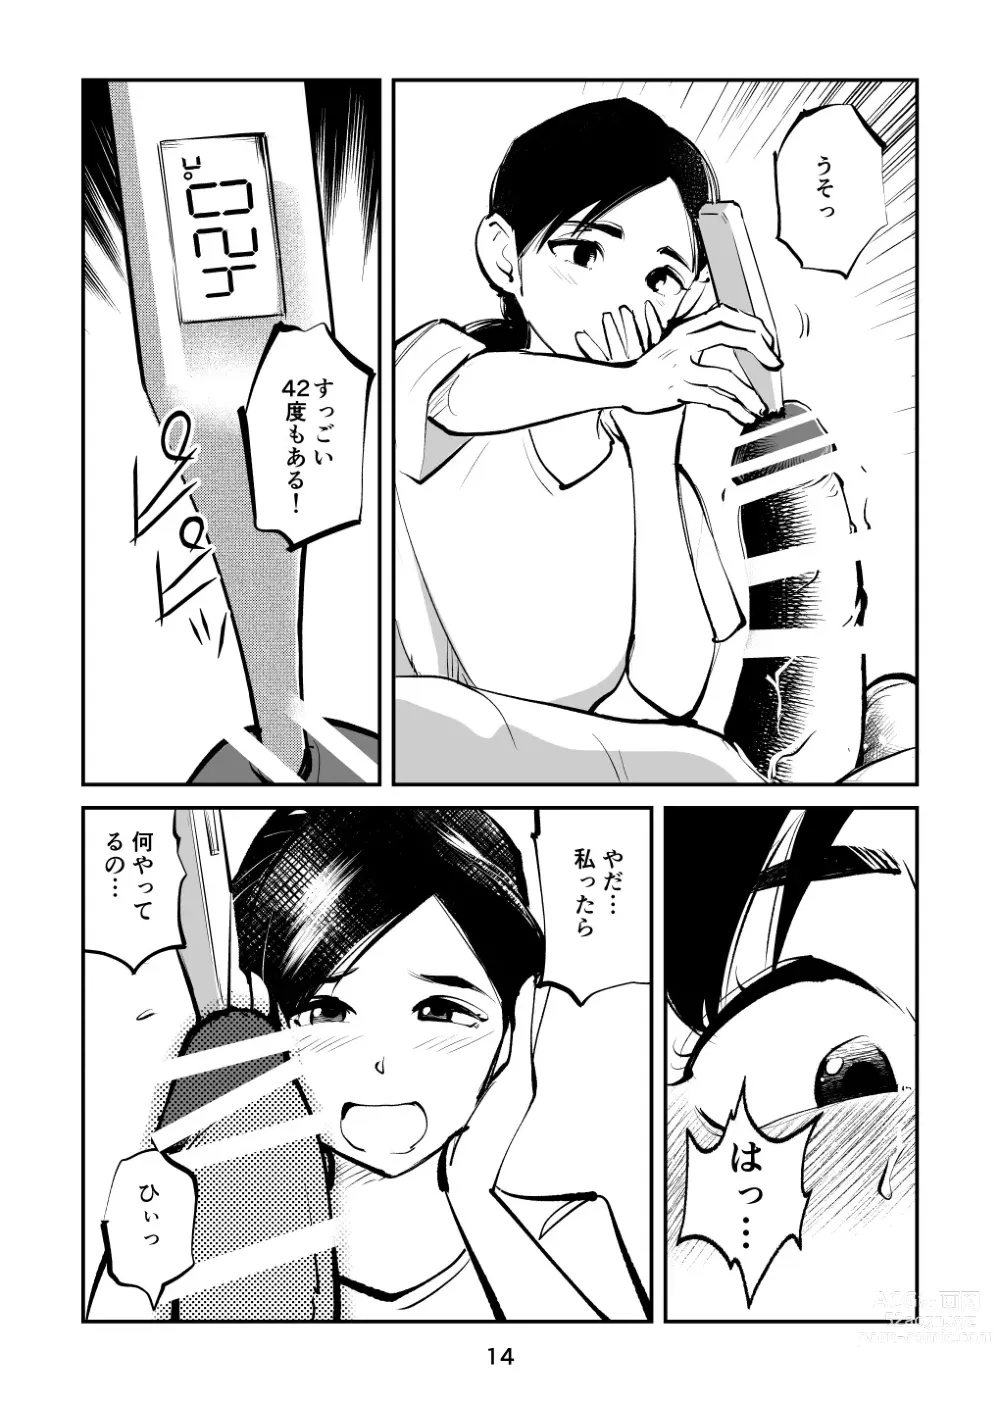 Page 14 of doujinshi Chinpo Shiikukakari 7